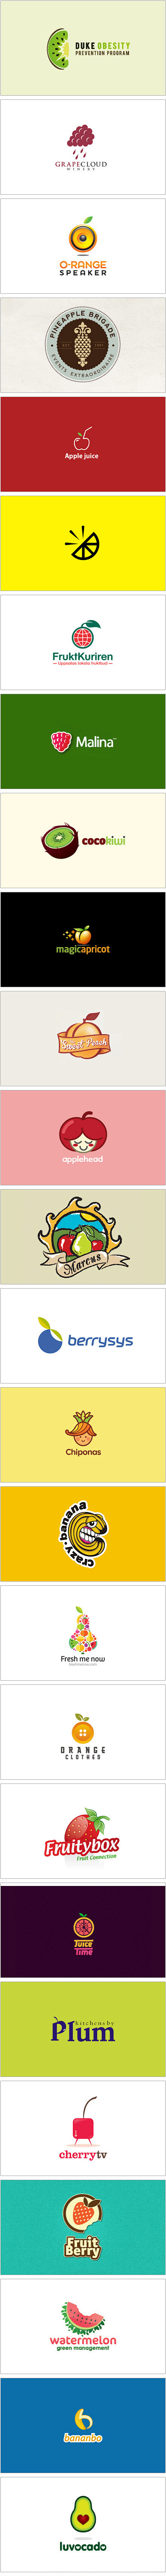 可爱的水果logo.jpg